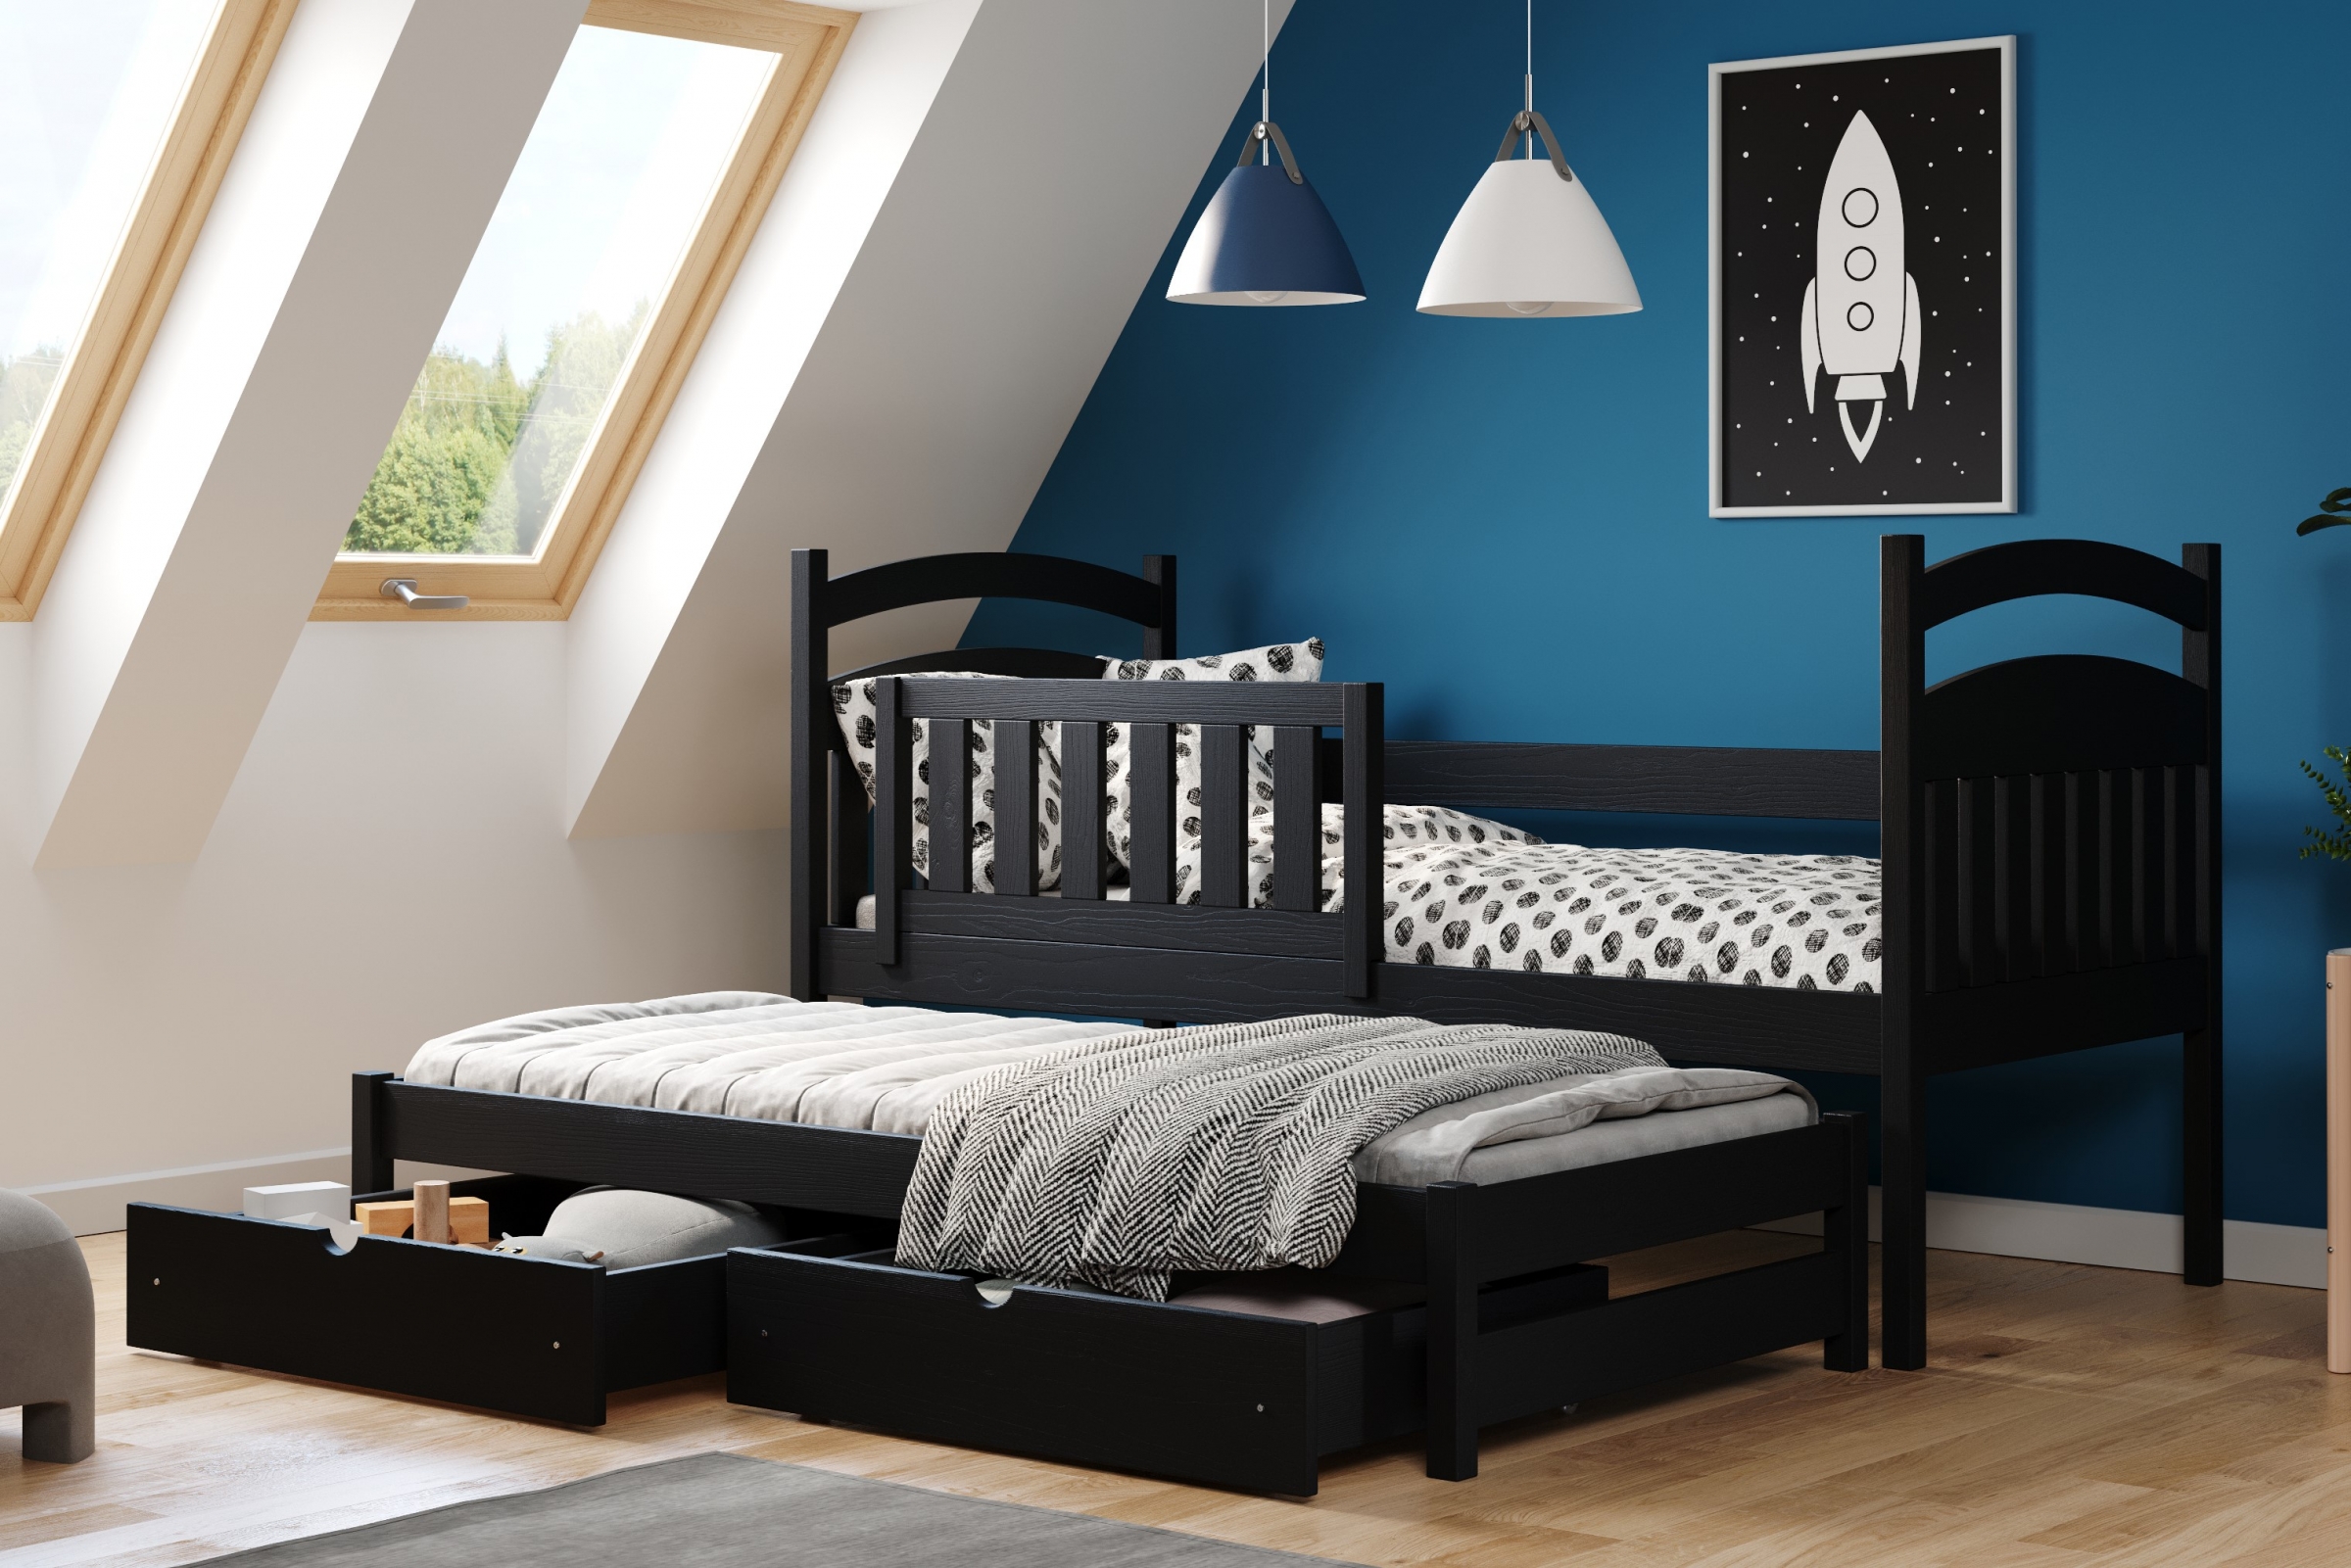 Detská posteľ prízemná výsuvna Amely - Farba Čierny, rozmer 80x180 Posteľ dzieciece prízemná s výsuvným lôžkom Amely - Farba Čierny - vizualizácia